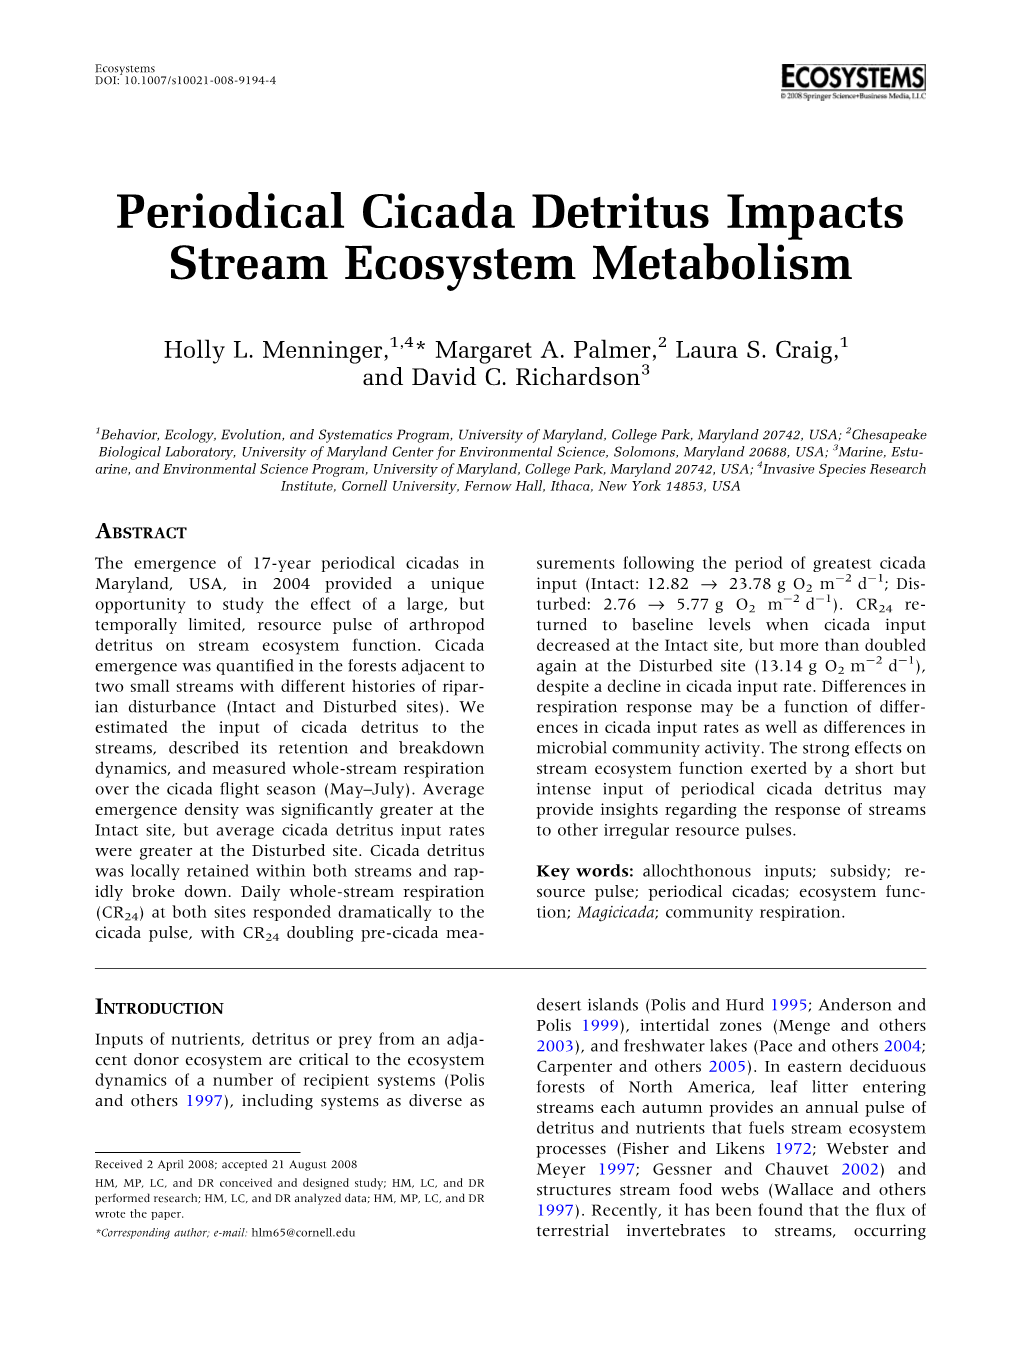 Periodical Cicada Detritus Impacts Stream Ecosystem Metabolism